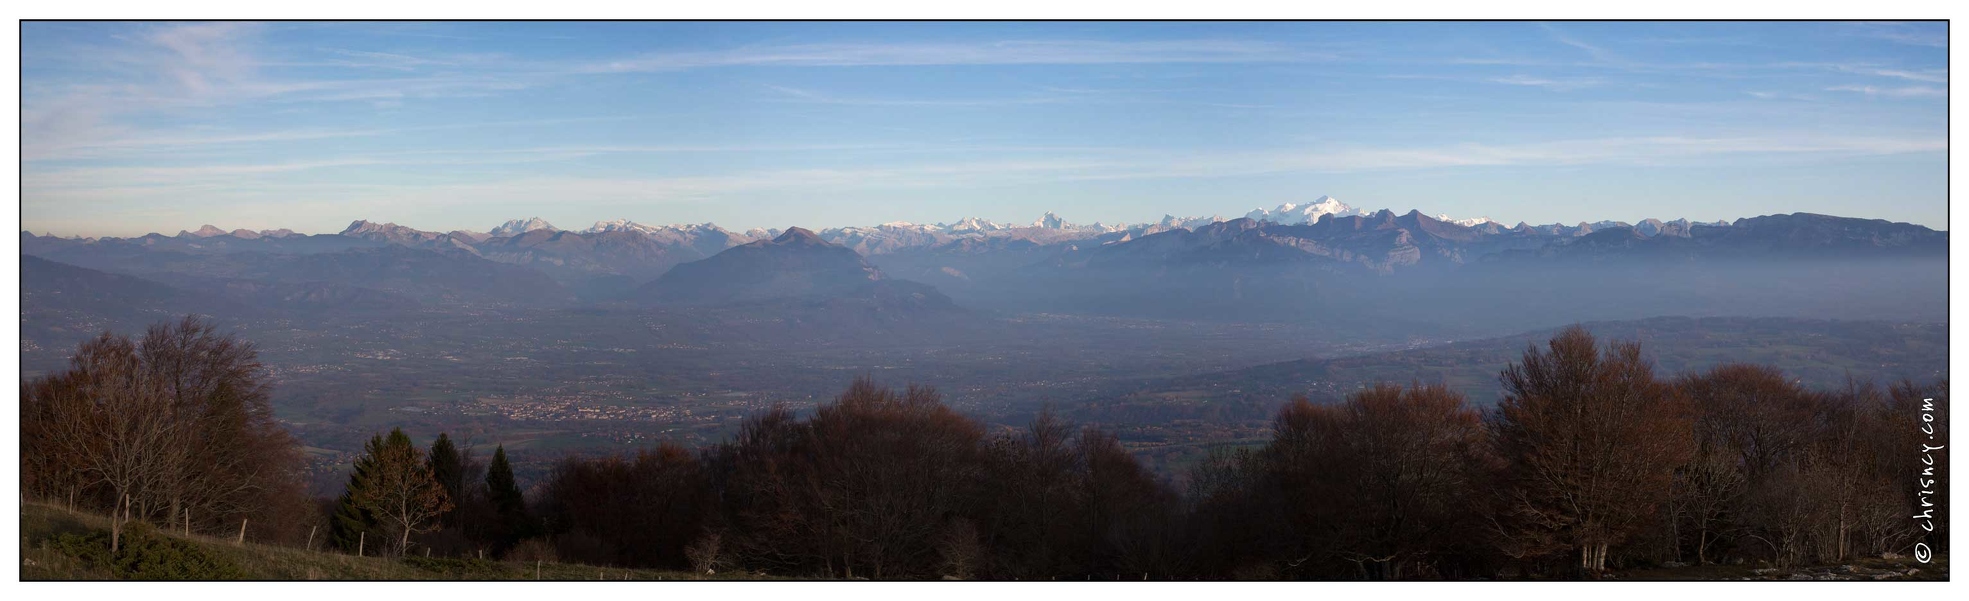 20151110-14_4332-Le_Saleve_Vue_sur_alpes_et_Mont_Blanc_pano.jpg